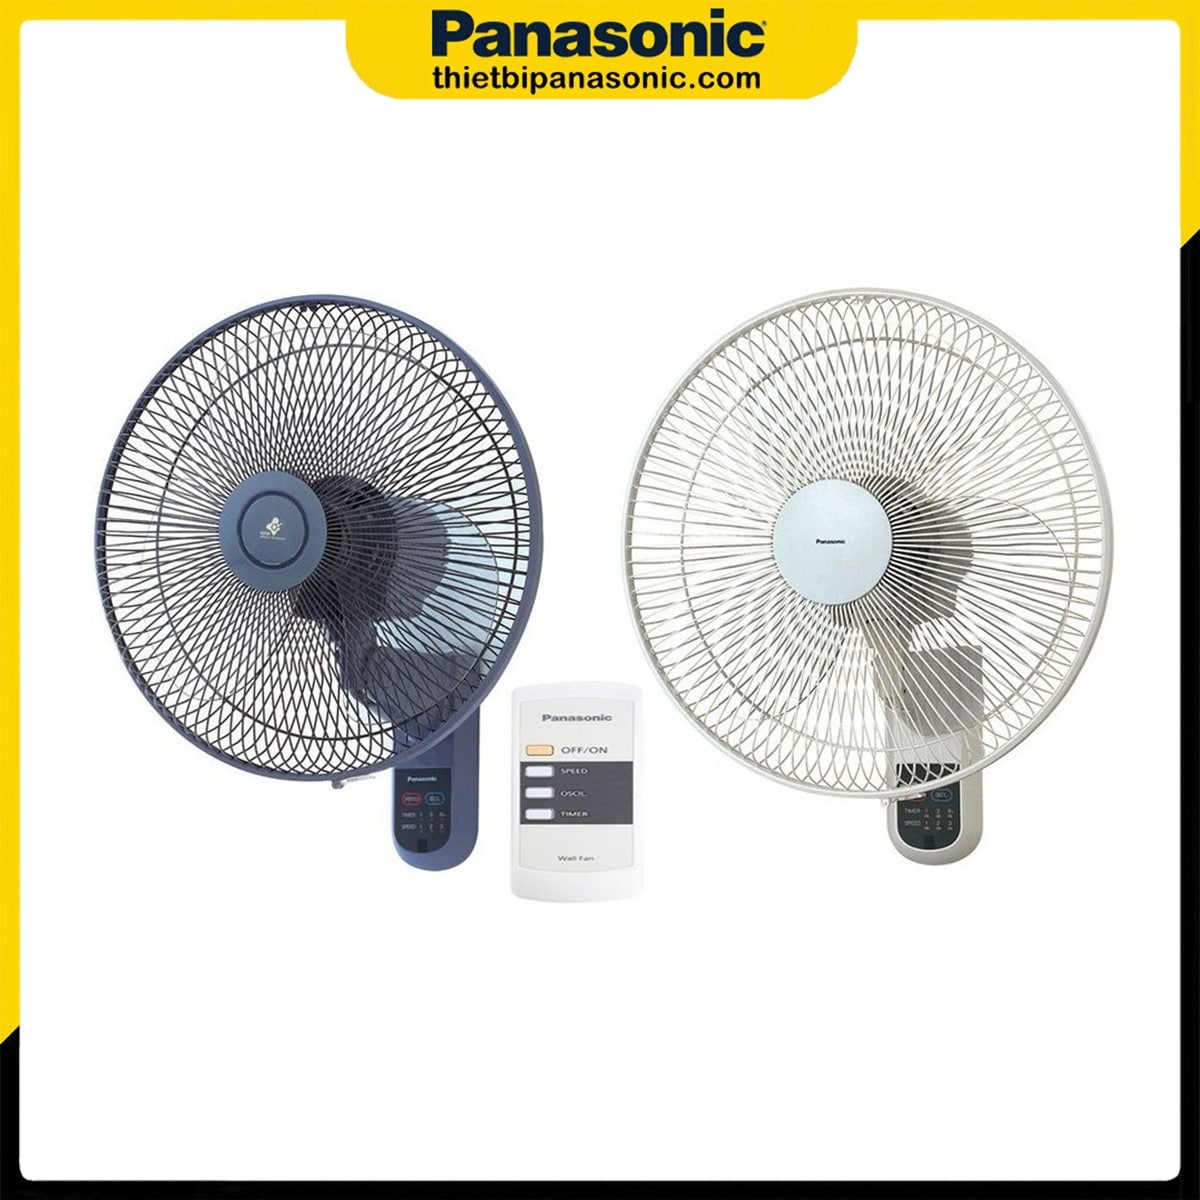 Quạt treo tường Panasonic F-409MG màu trắng ngà bên cạnh mẫu màu xanh cũng nhận được sự yêu thích không kém của người tiêu dùng